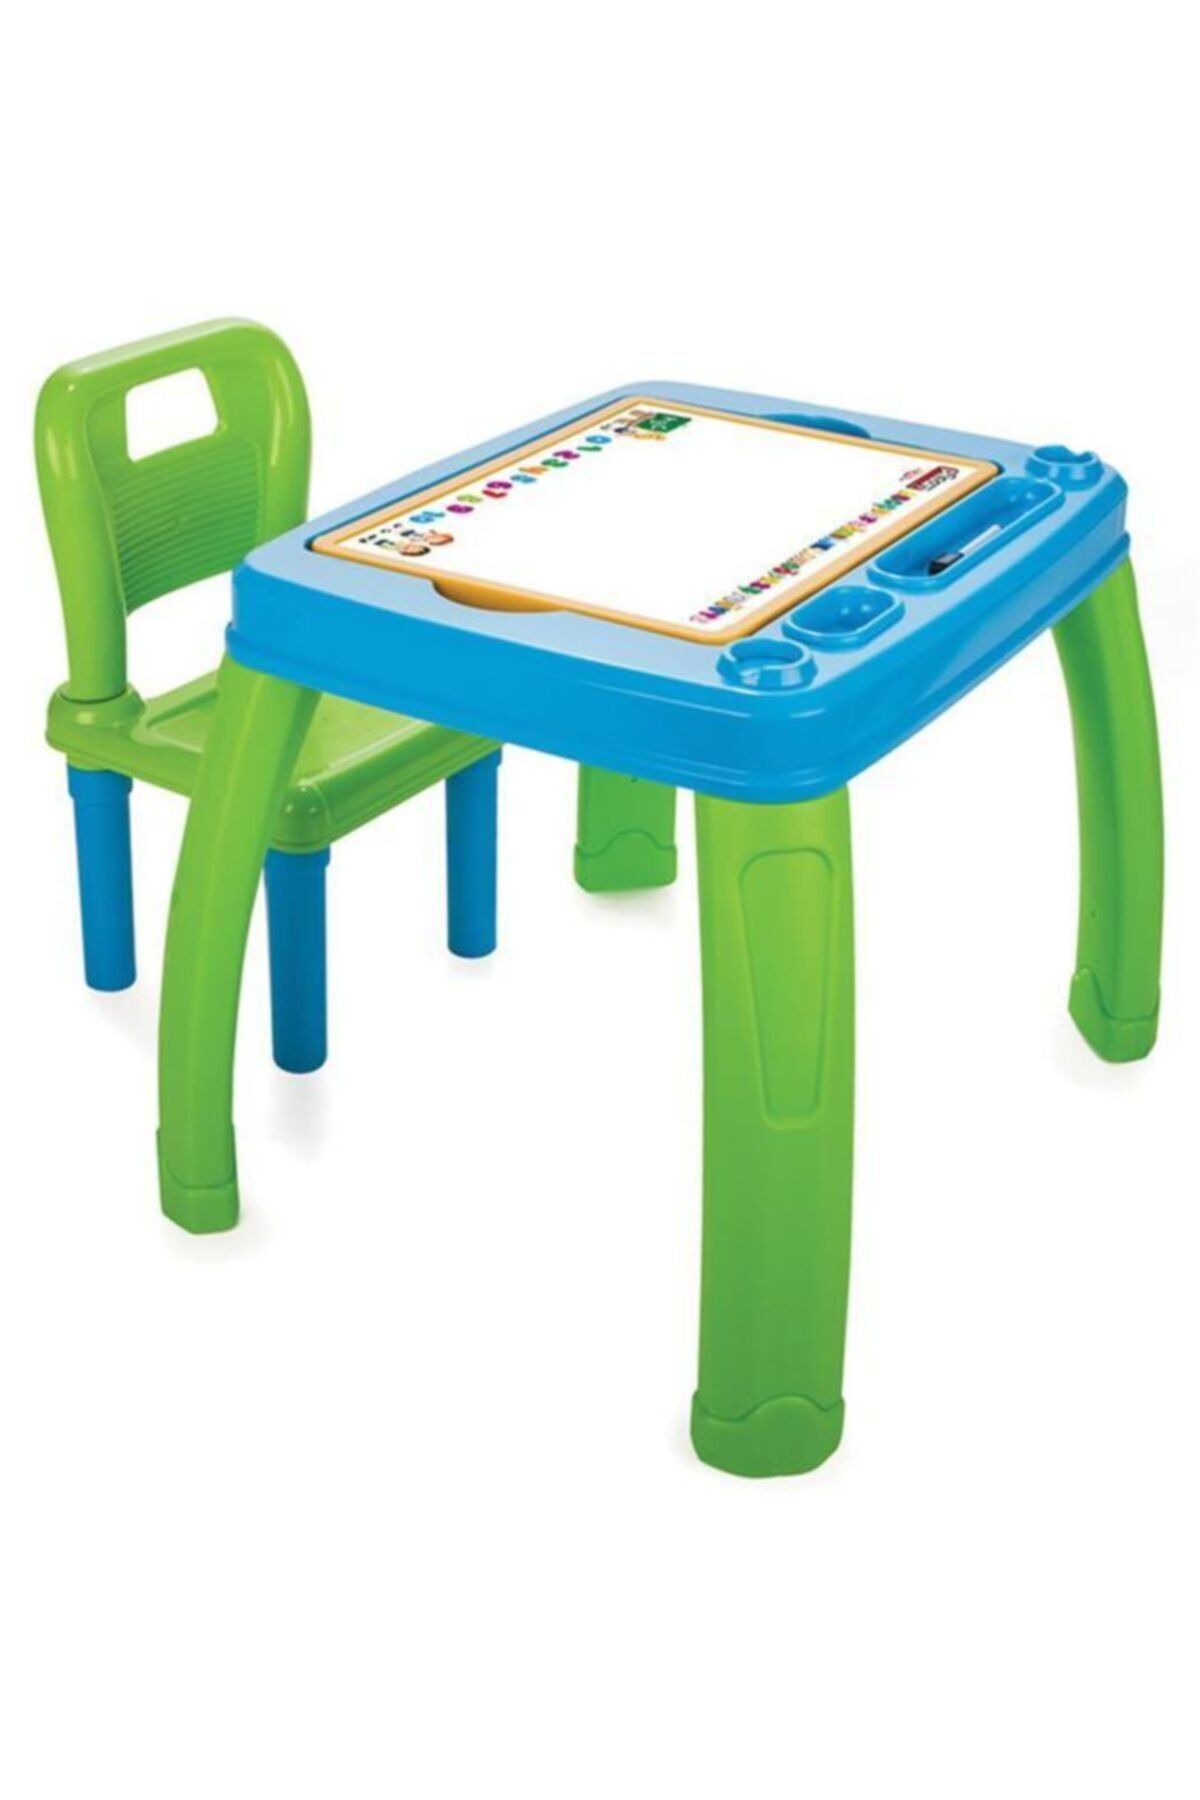 PİLSAN Montessori Eğitici Çocuk Sandalyeli Çalışma Masa - Yeşil Mavi